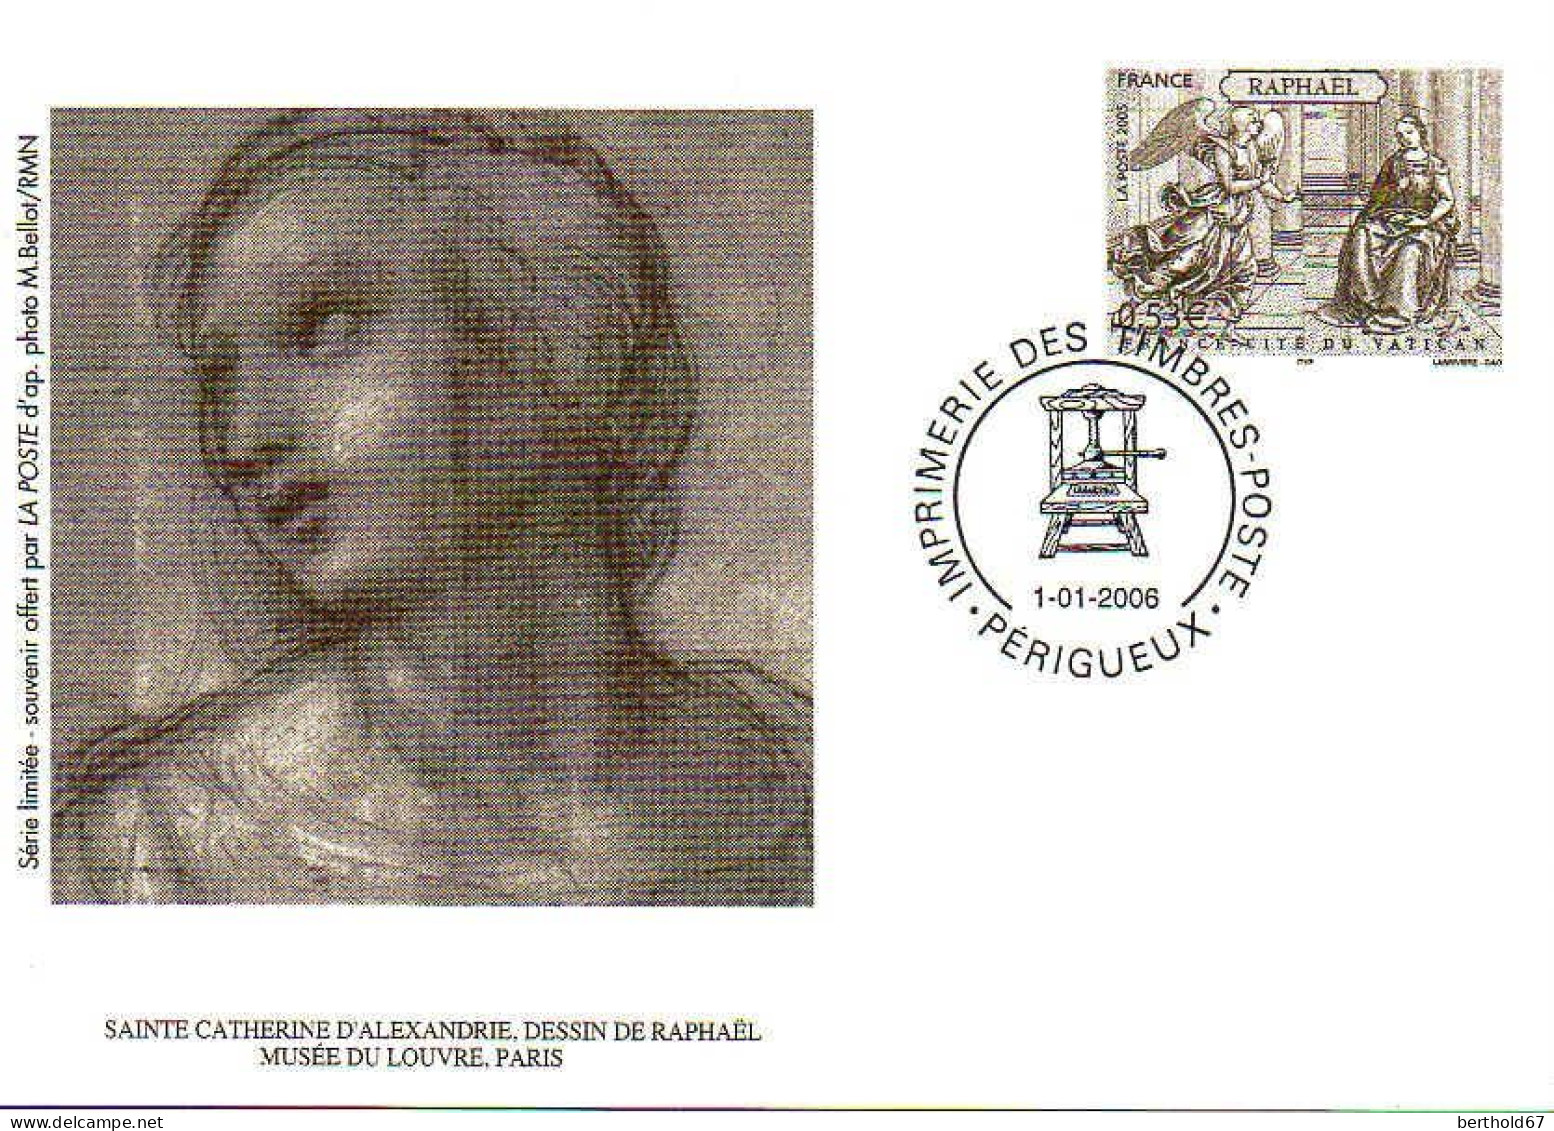 France Entier-P Carte (5010-CP) Raphaël France Cité Du Vatican - Sonderganzsachen